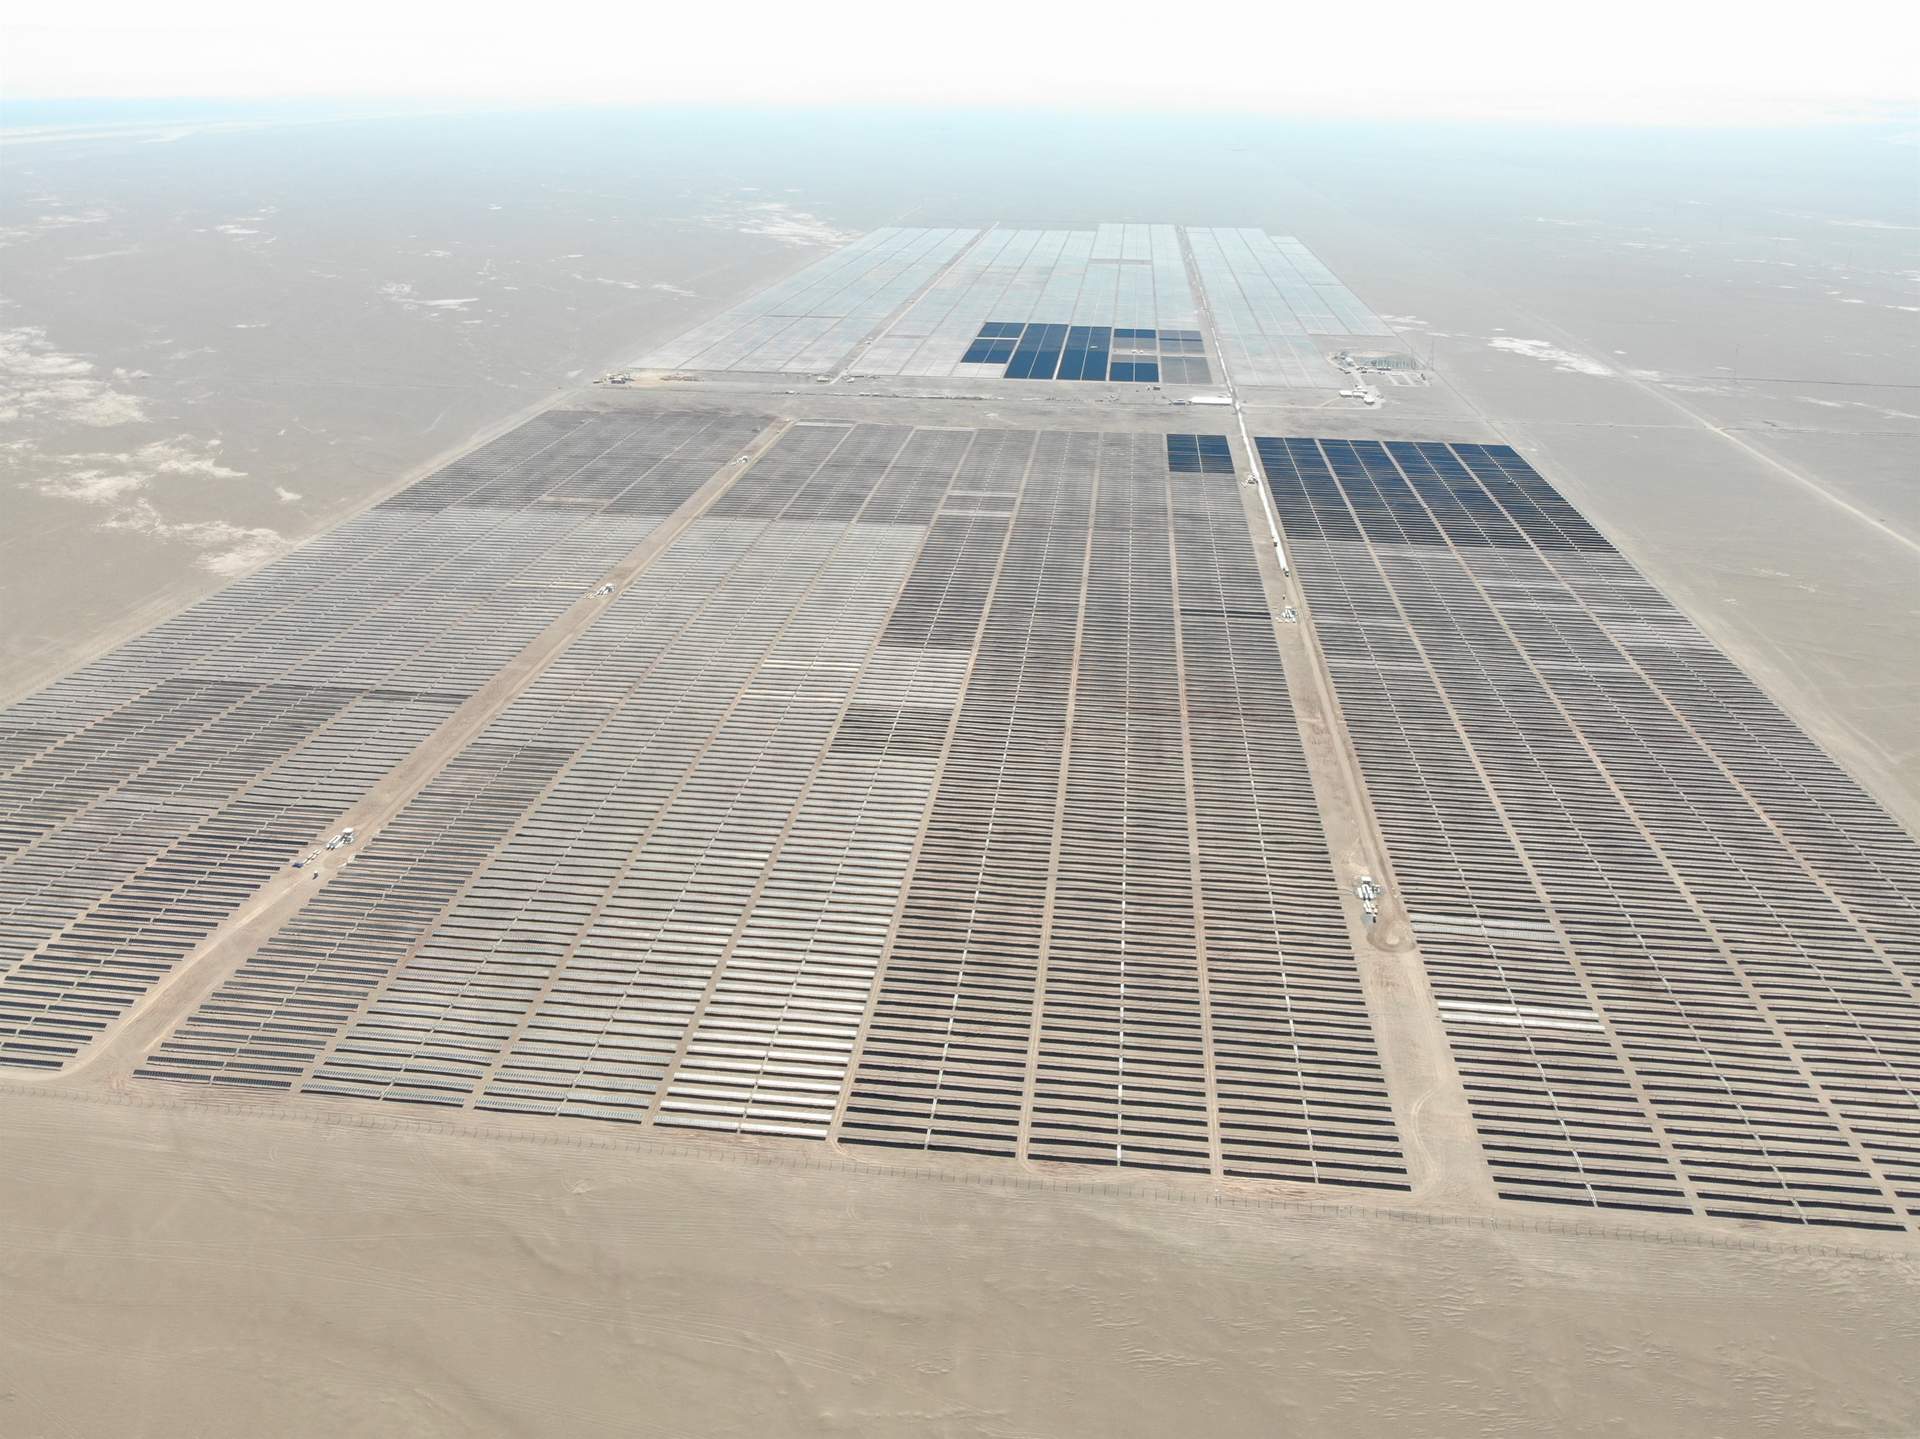 Solarpack construirá una planta solar fotovoltaica en India de 450 MW vinculada a un 'PPA' a 25 años